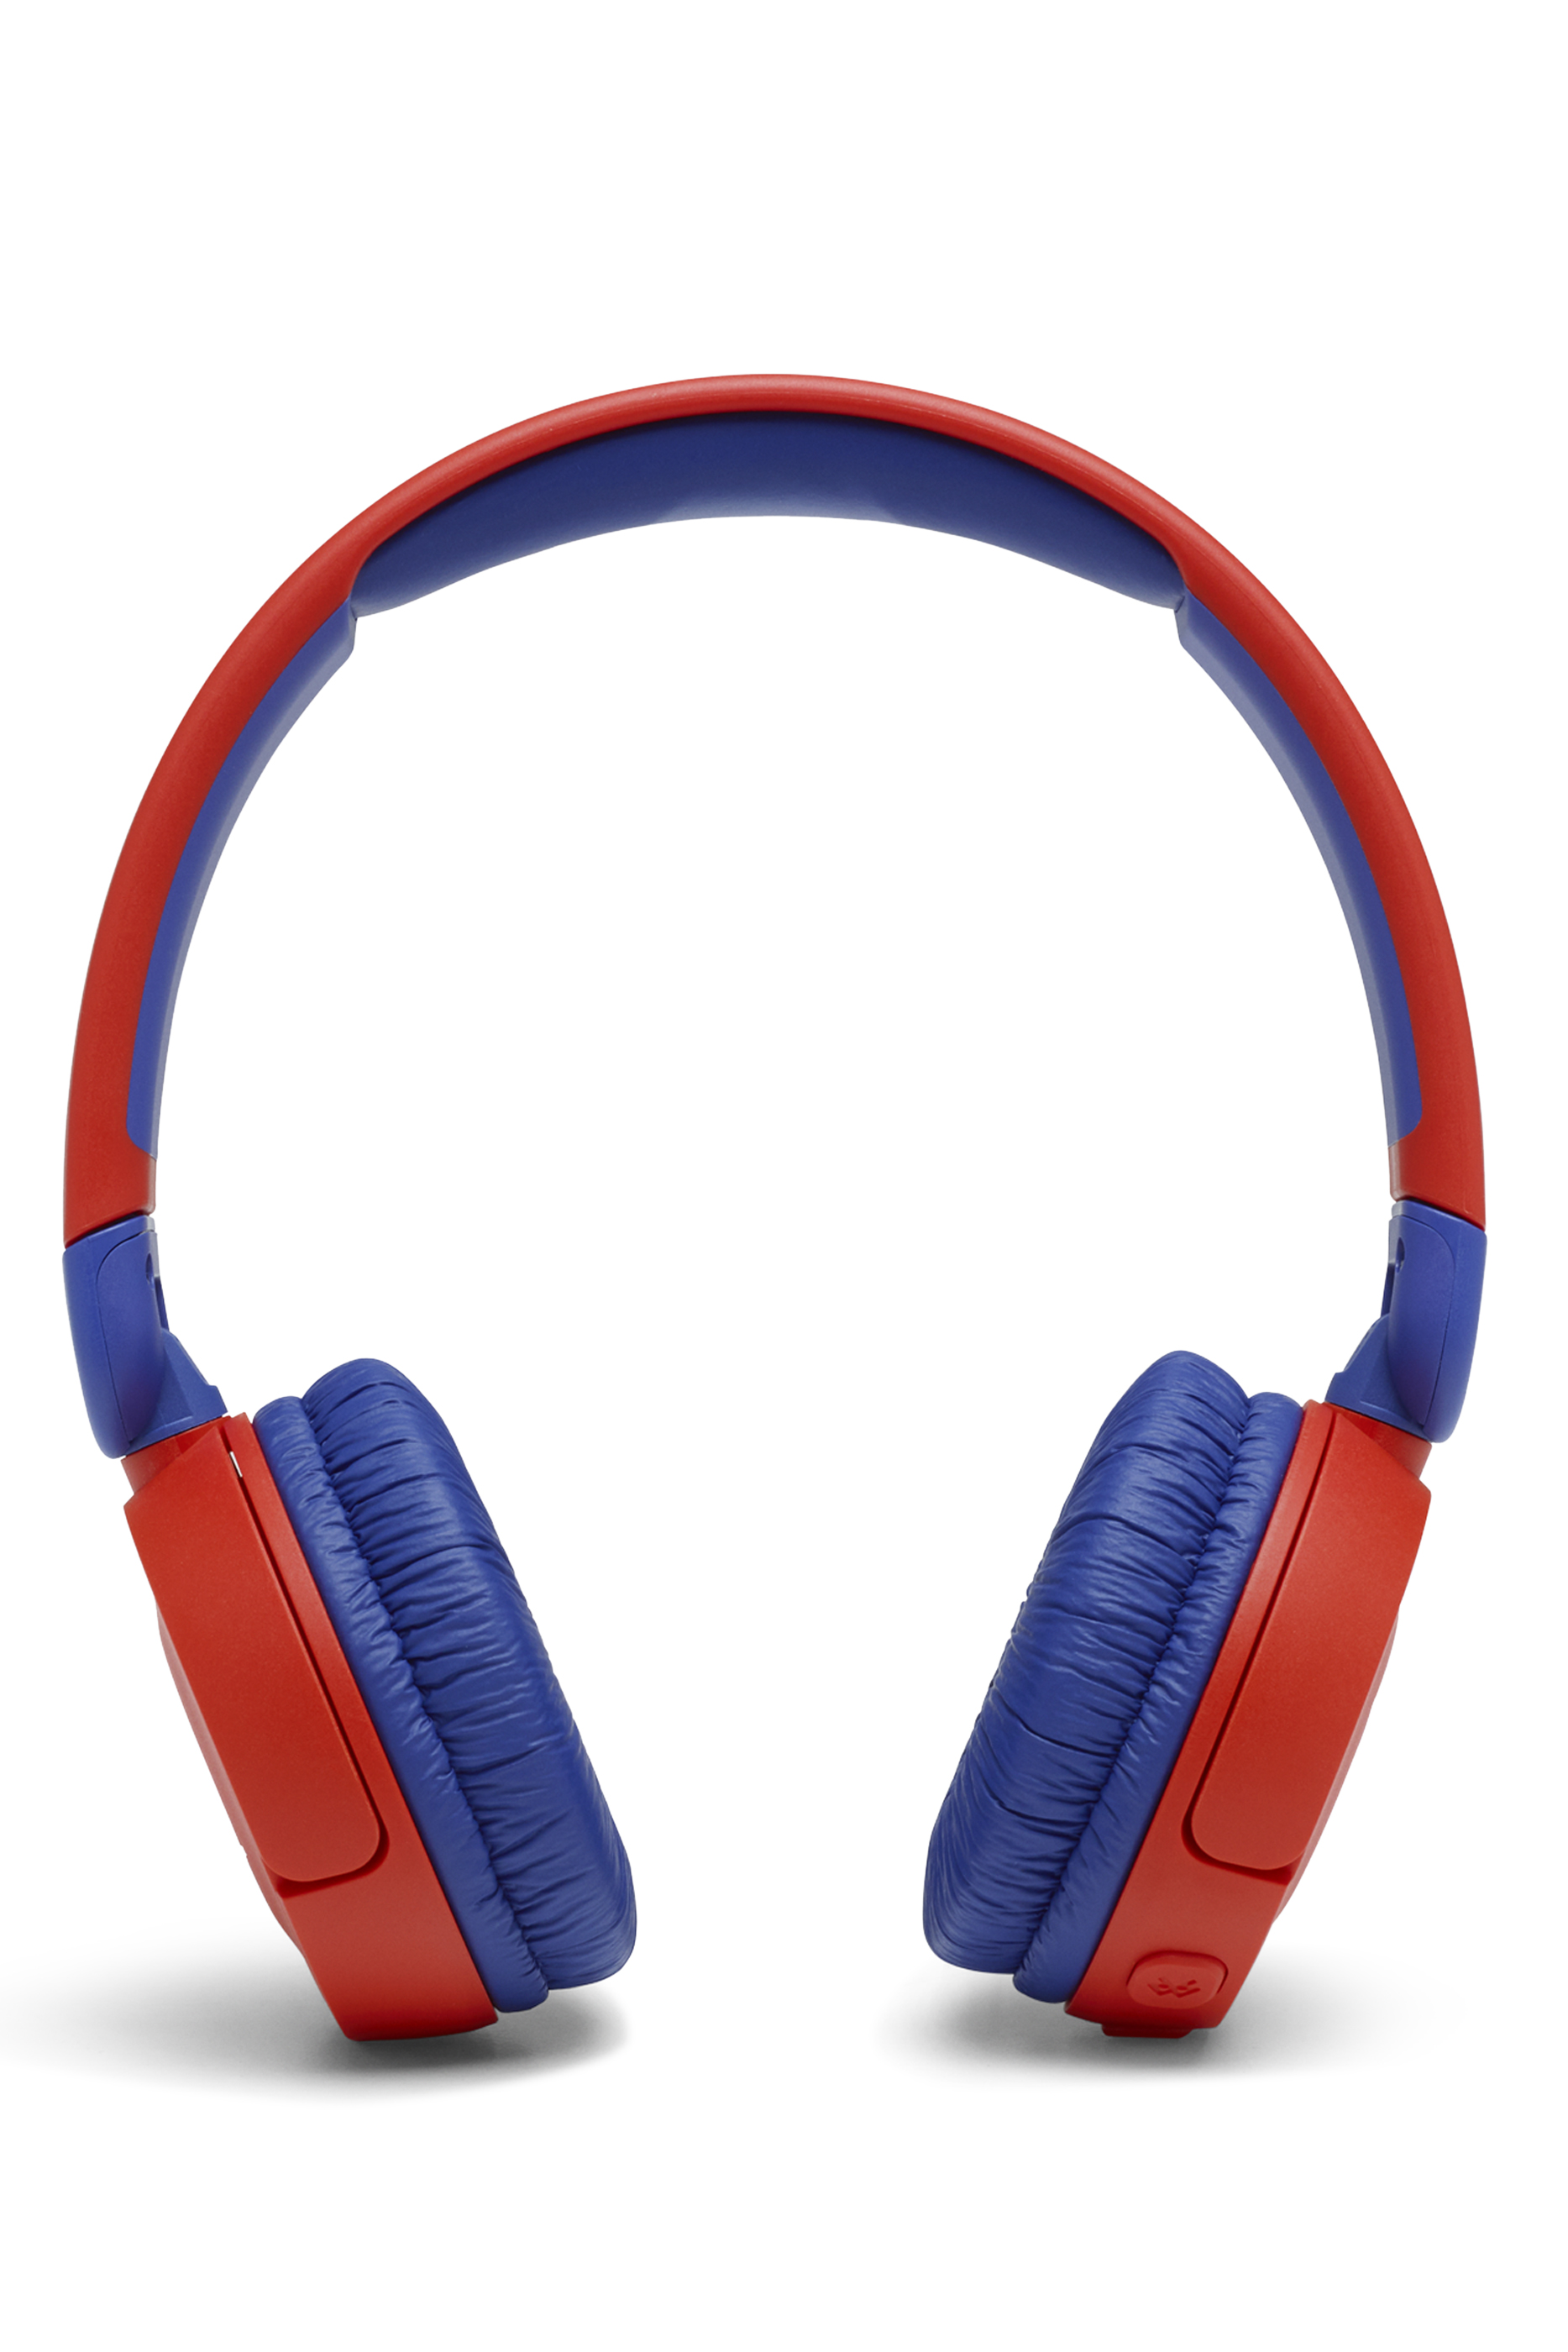 Buy JBL Junior 310BT Bluetooth On-Ear Kids Headphones for Home |  Bloomingdale's UAE